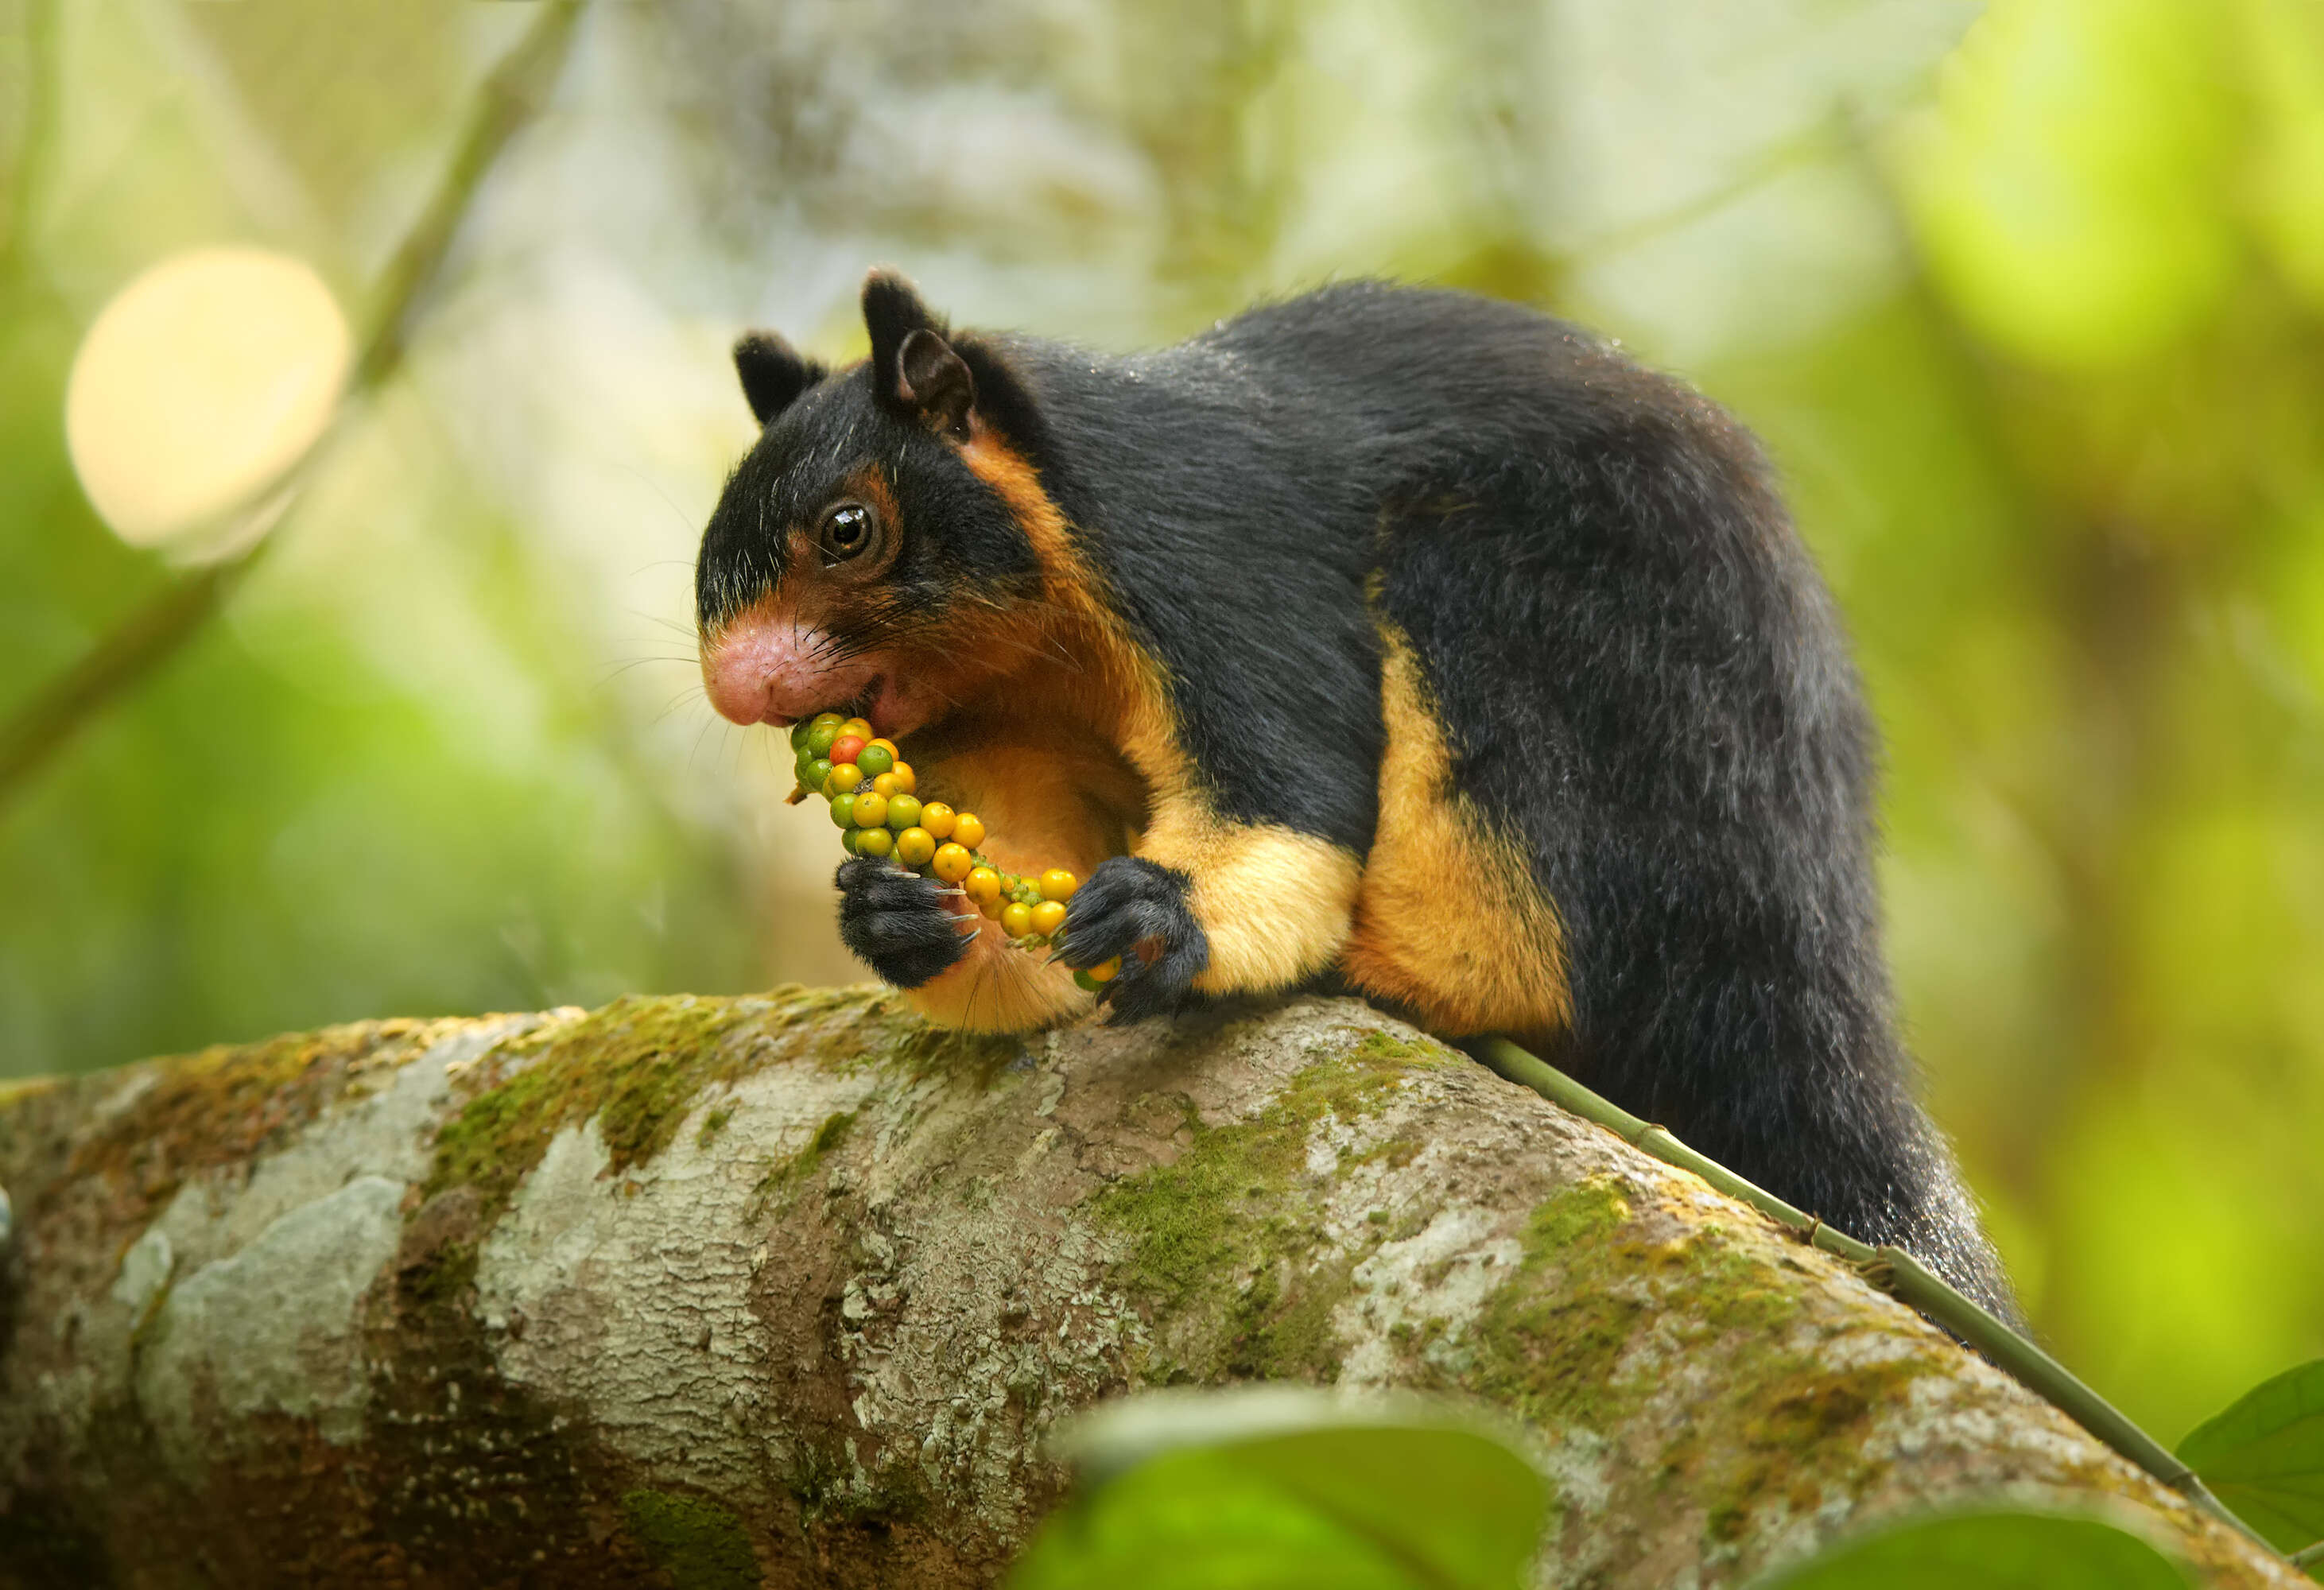 Malabar giant squirrel eating fruit